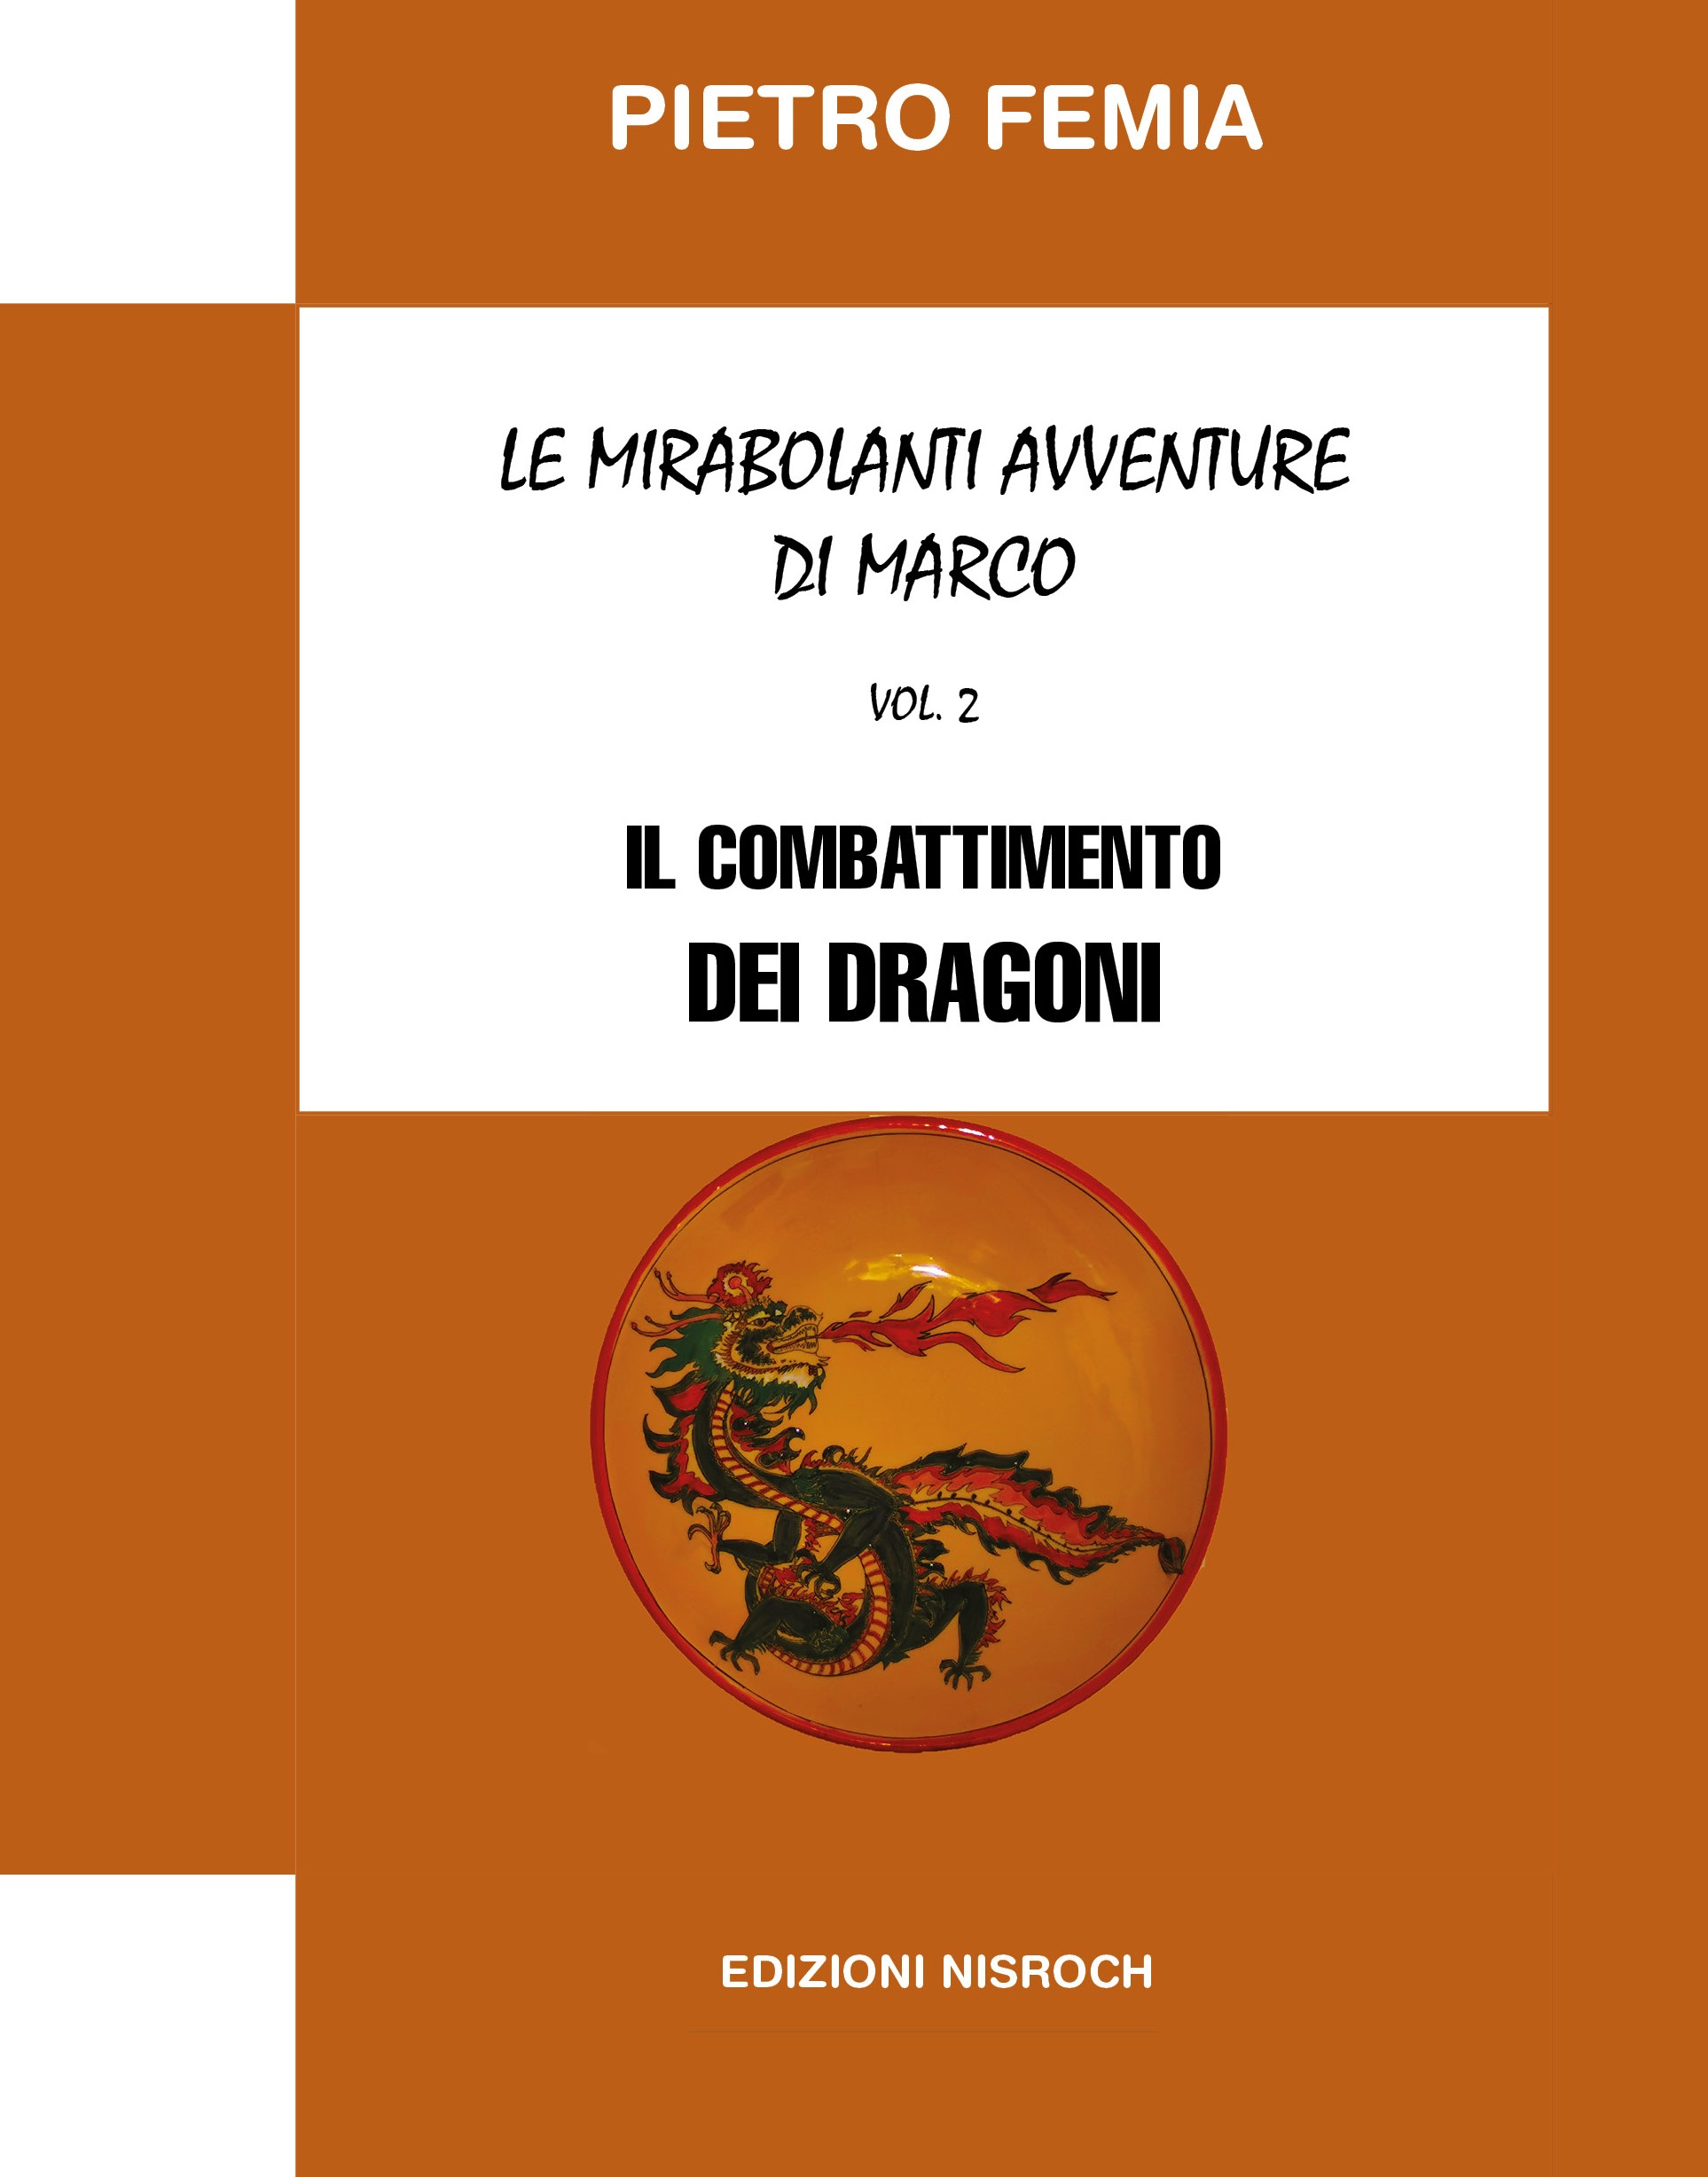 Copertina "Il combattimento dei dragoni", secondo volume di "Le mirabolanti avventure di Marco Vol. 2" di Pietro Femia